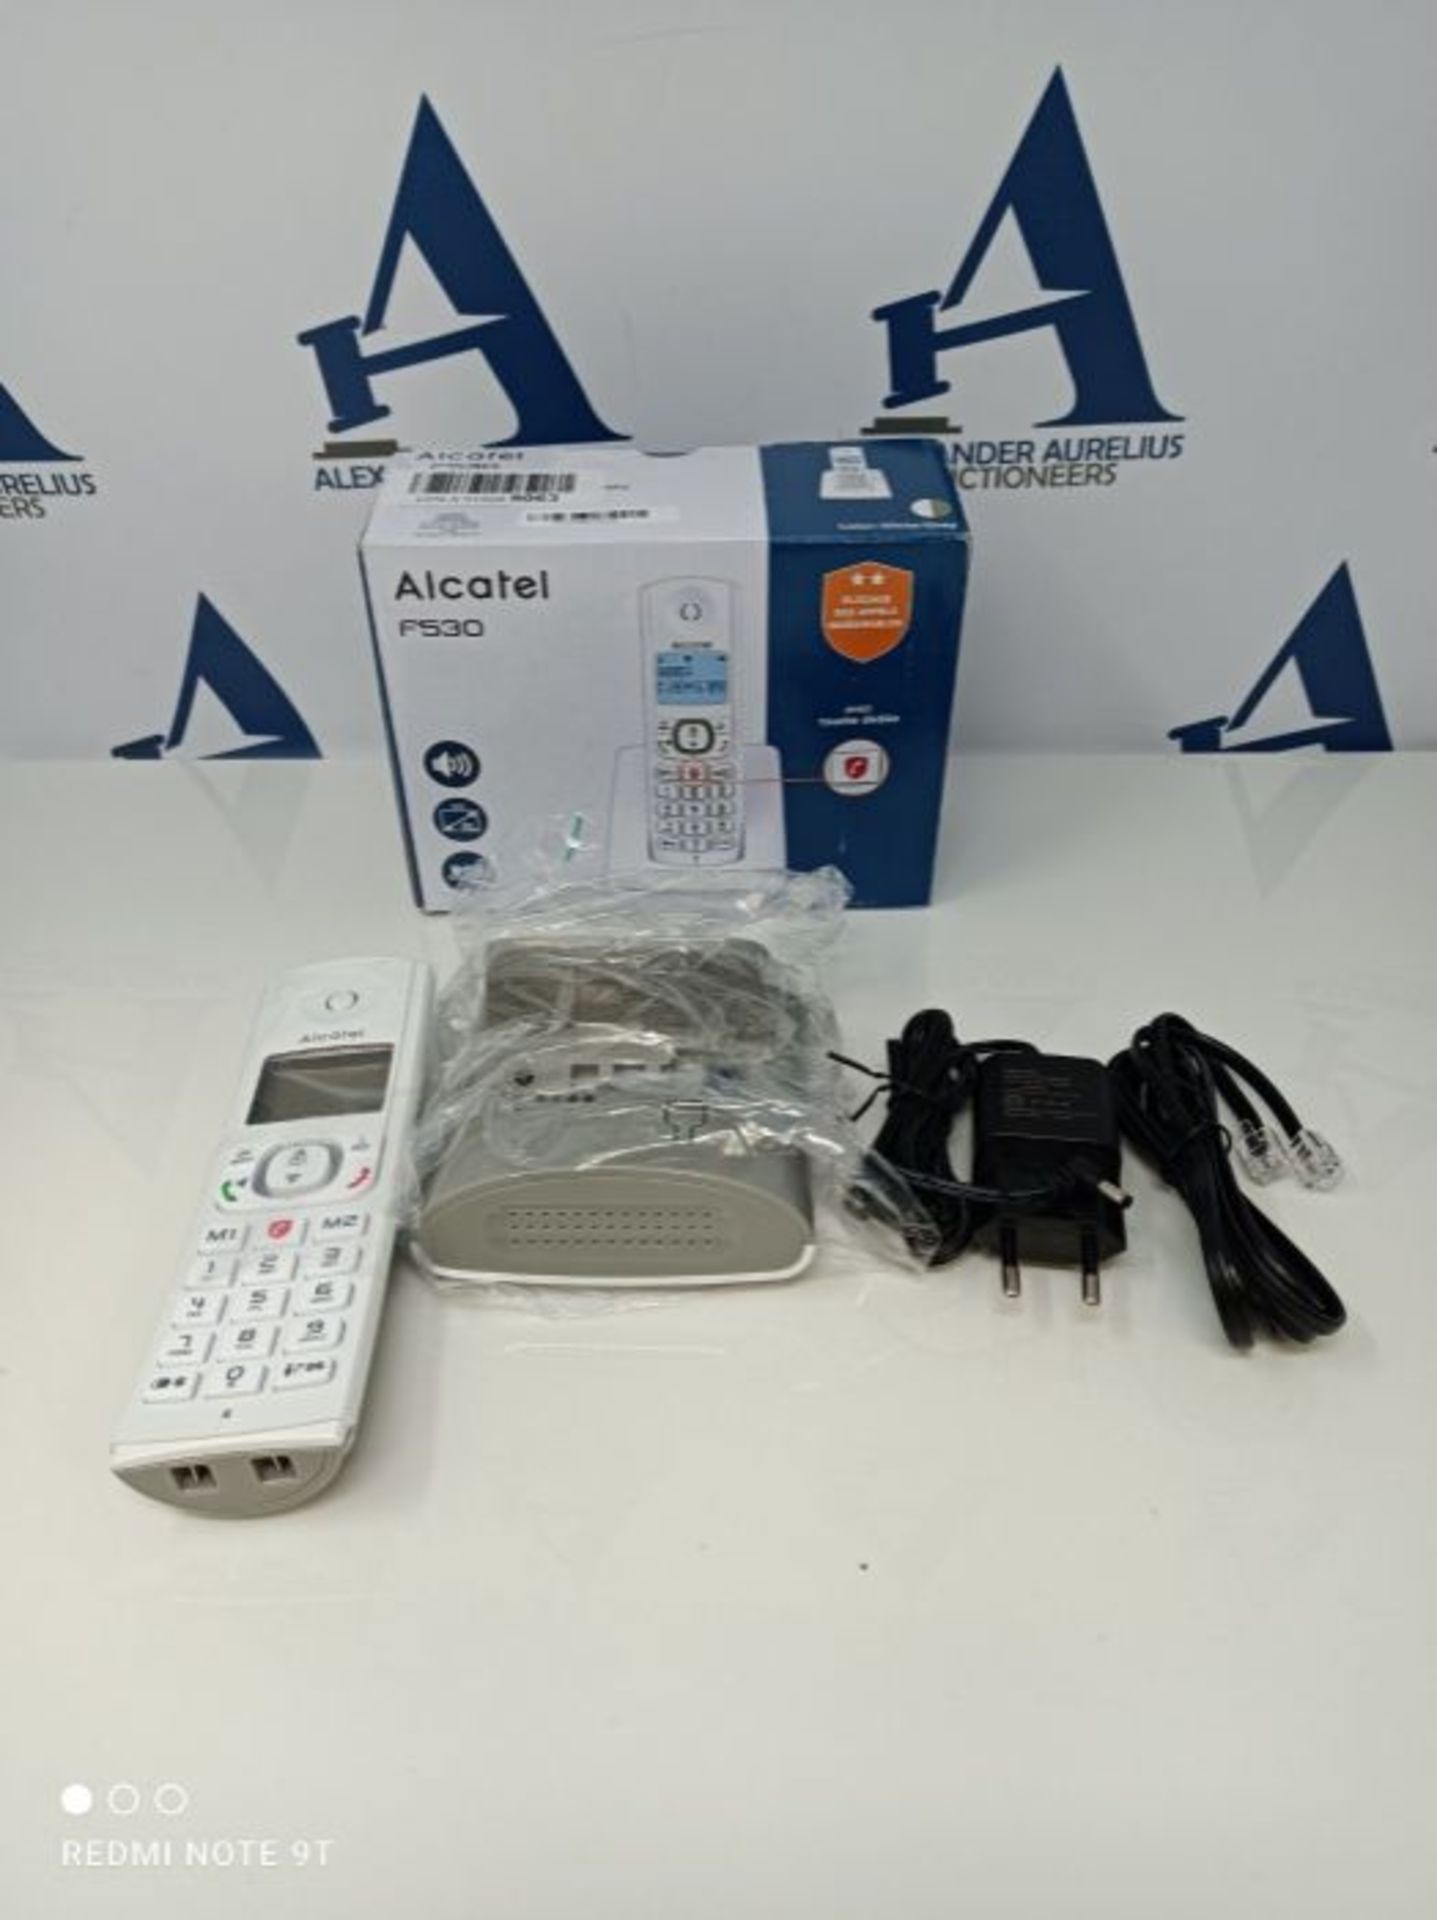 Alcatel F530 Telefono DECT Identificatore di chiamata Grigio, Bianco - Image 4 of 4